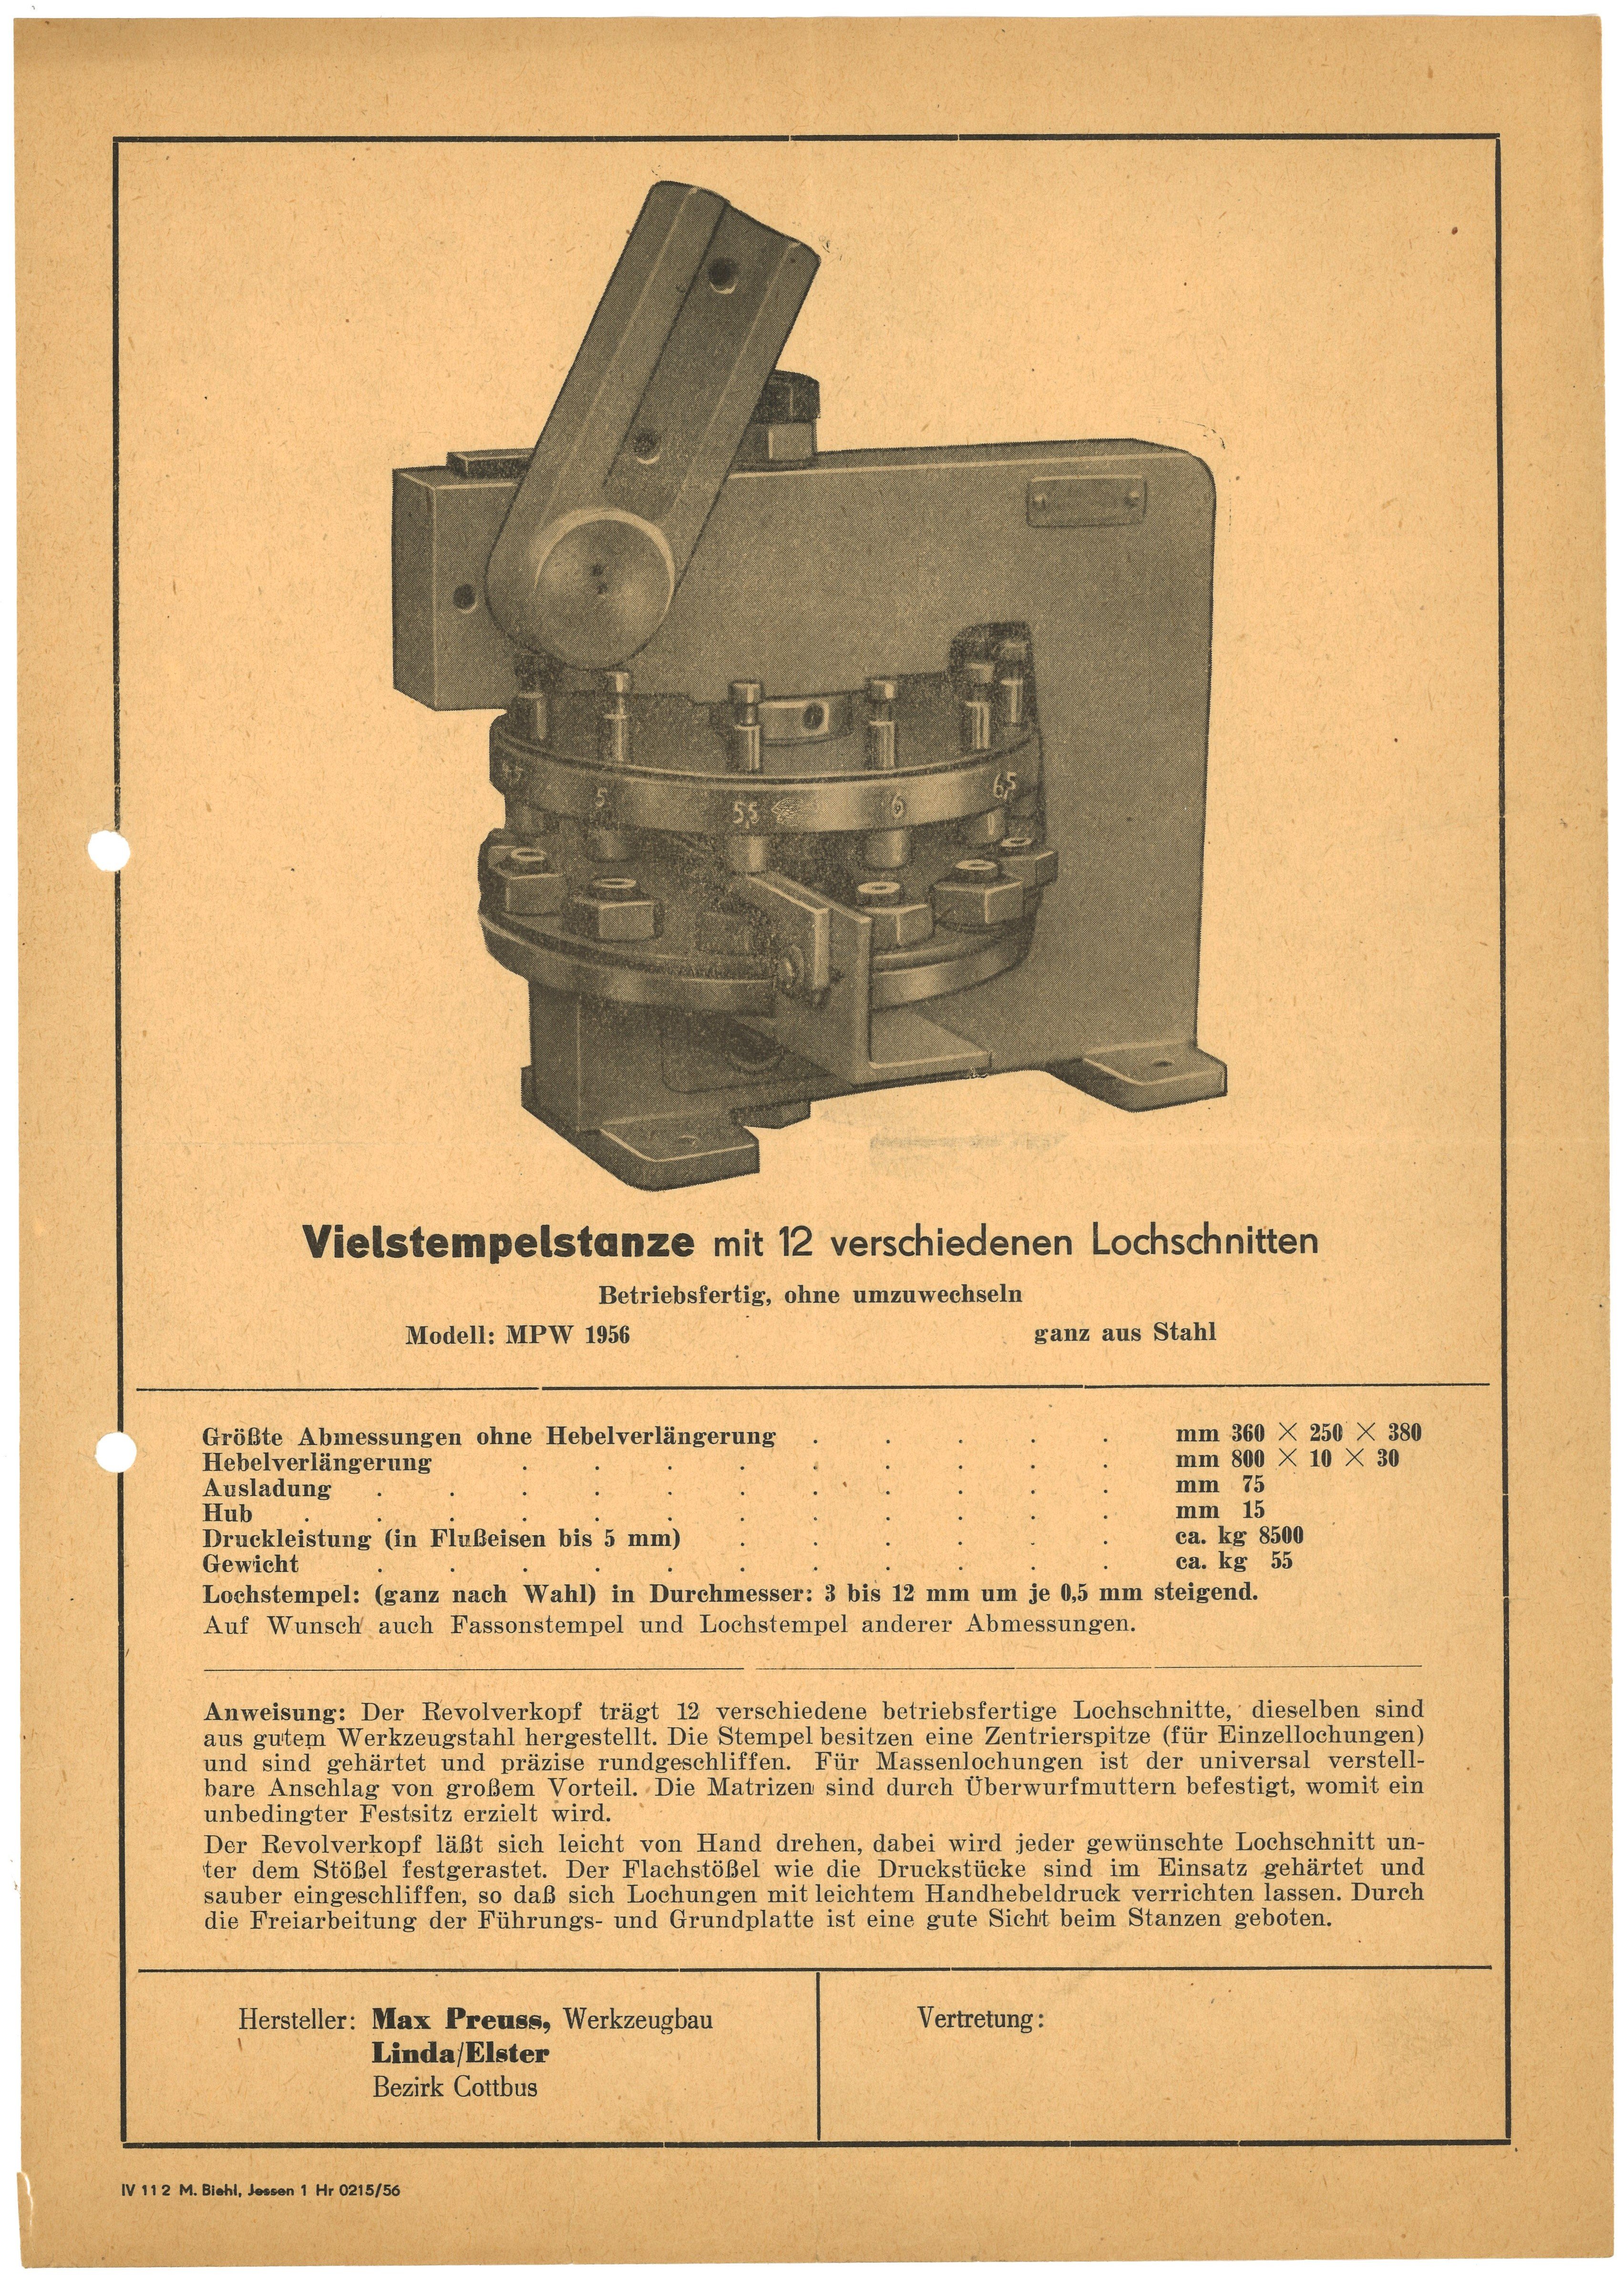 Typenblatt der Werkzeugbaufirma Max Preuss in Linda/Elster für eine Vierstempelstanze (1956) (Landesgeschichtliche Vereinigung für die Mark Brandenburg e.V., Archiv CC BY)